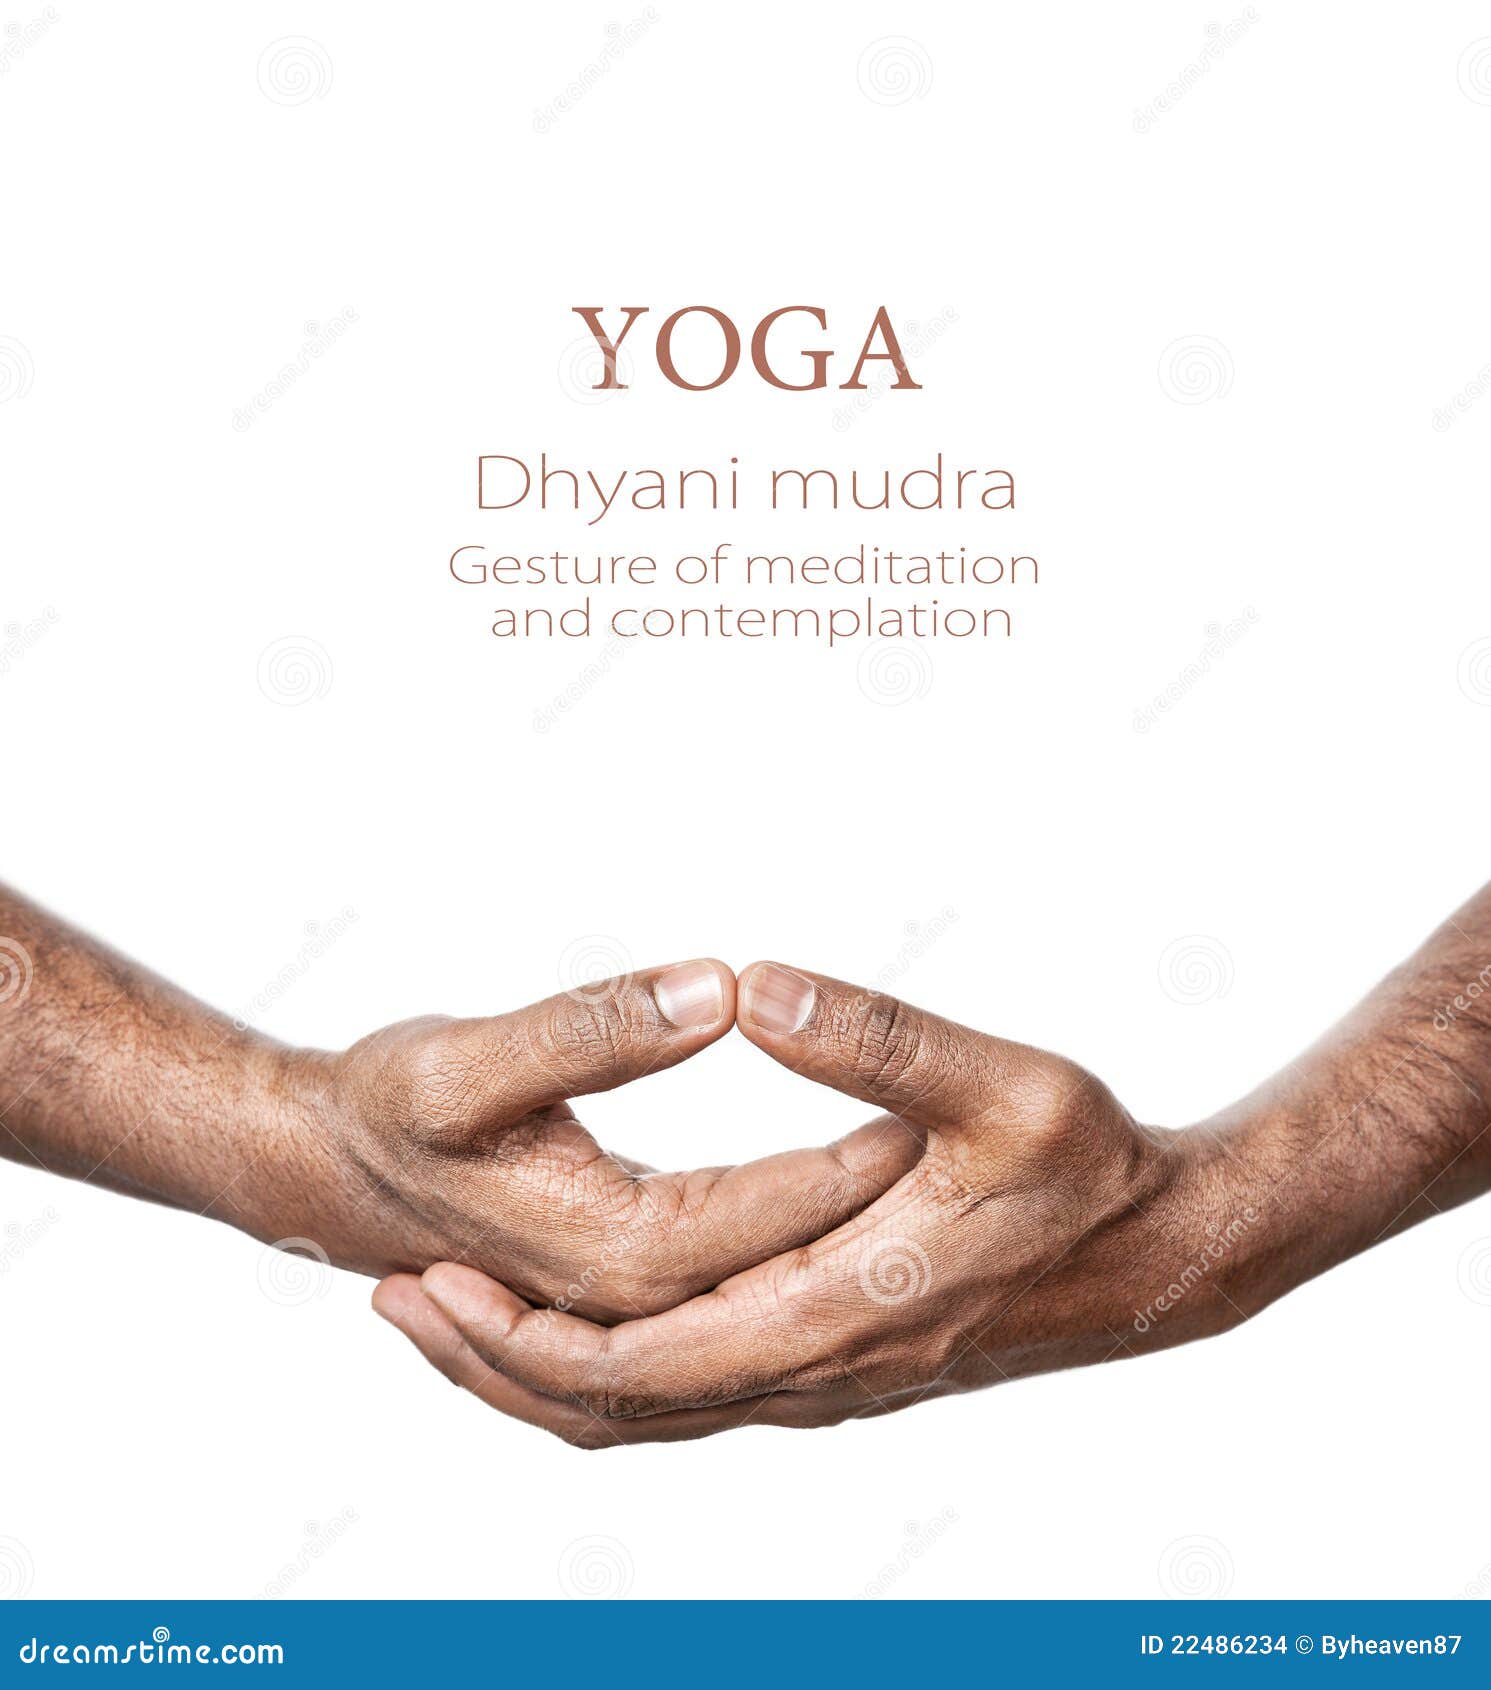 yoga dhyani mudra